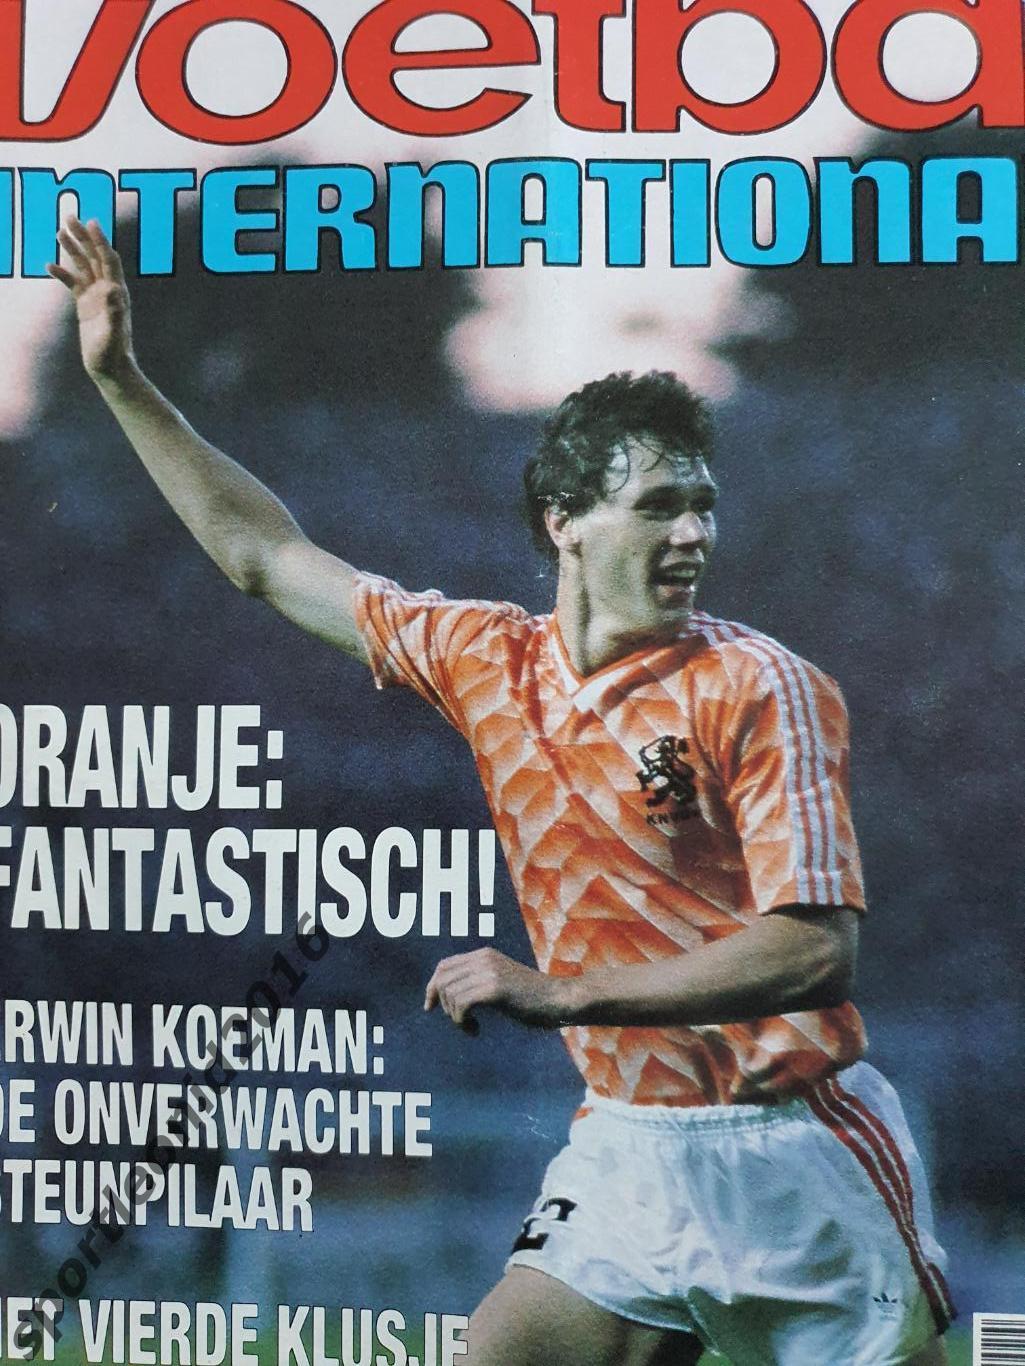 Voetbal International 1988.Годовая подписка.52 номера +4 спецвыпуска к Евро-88.9 4